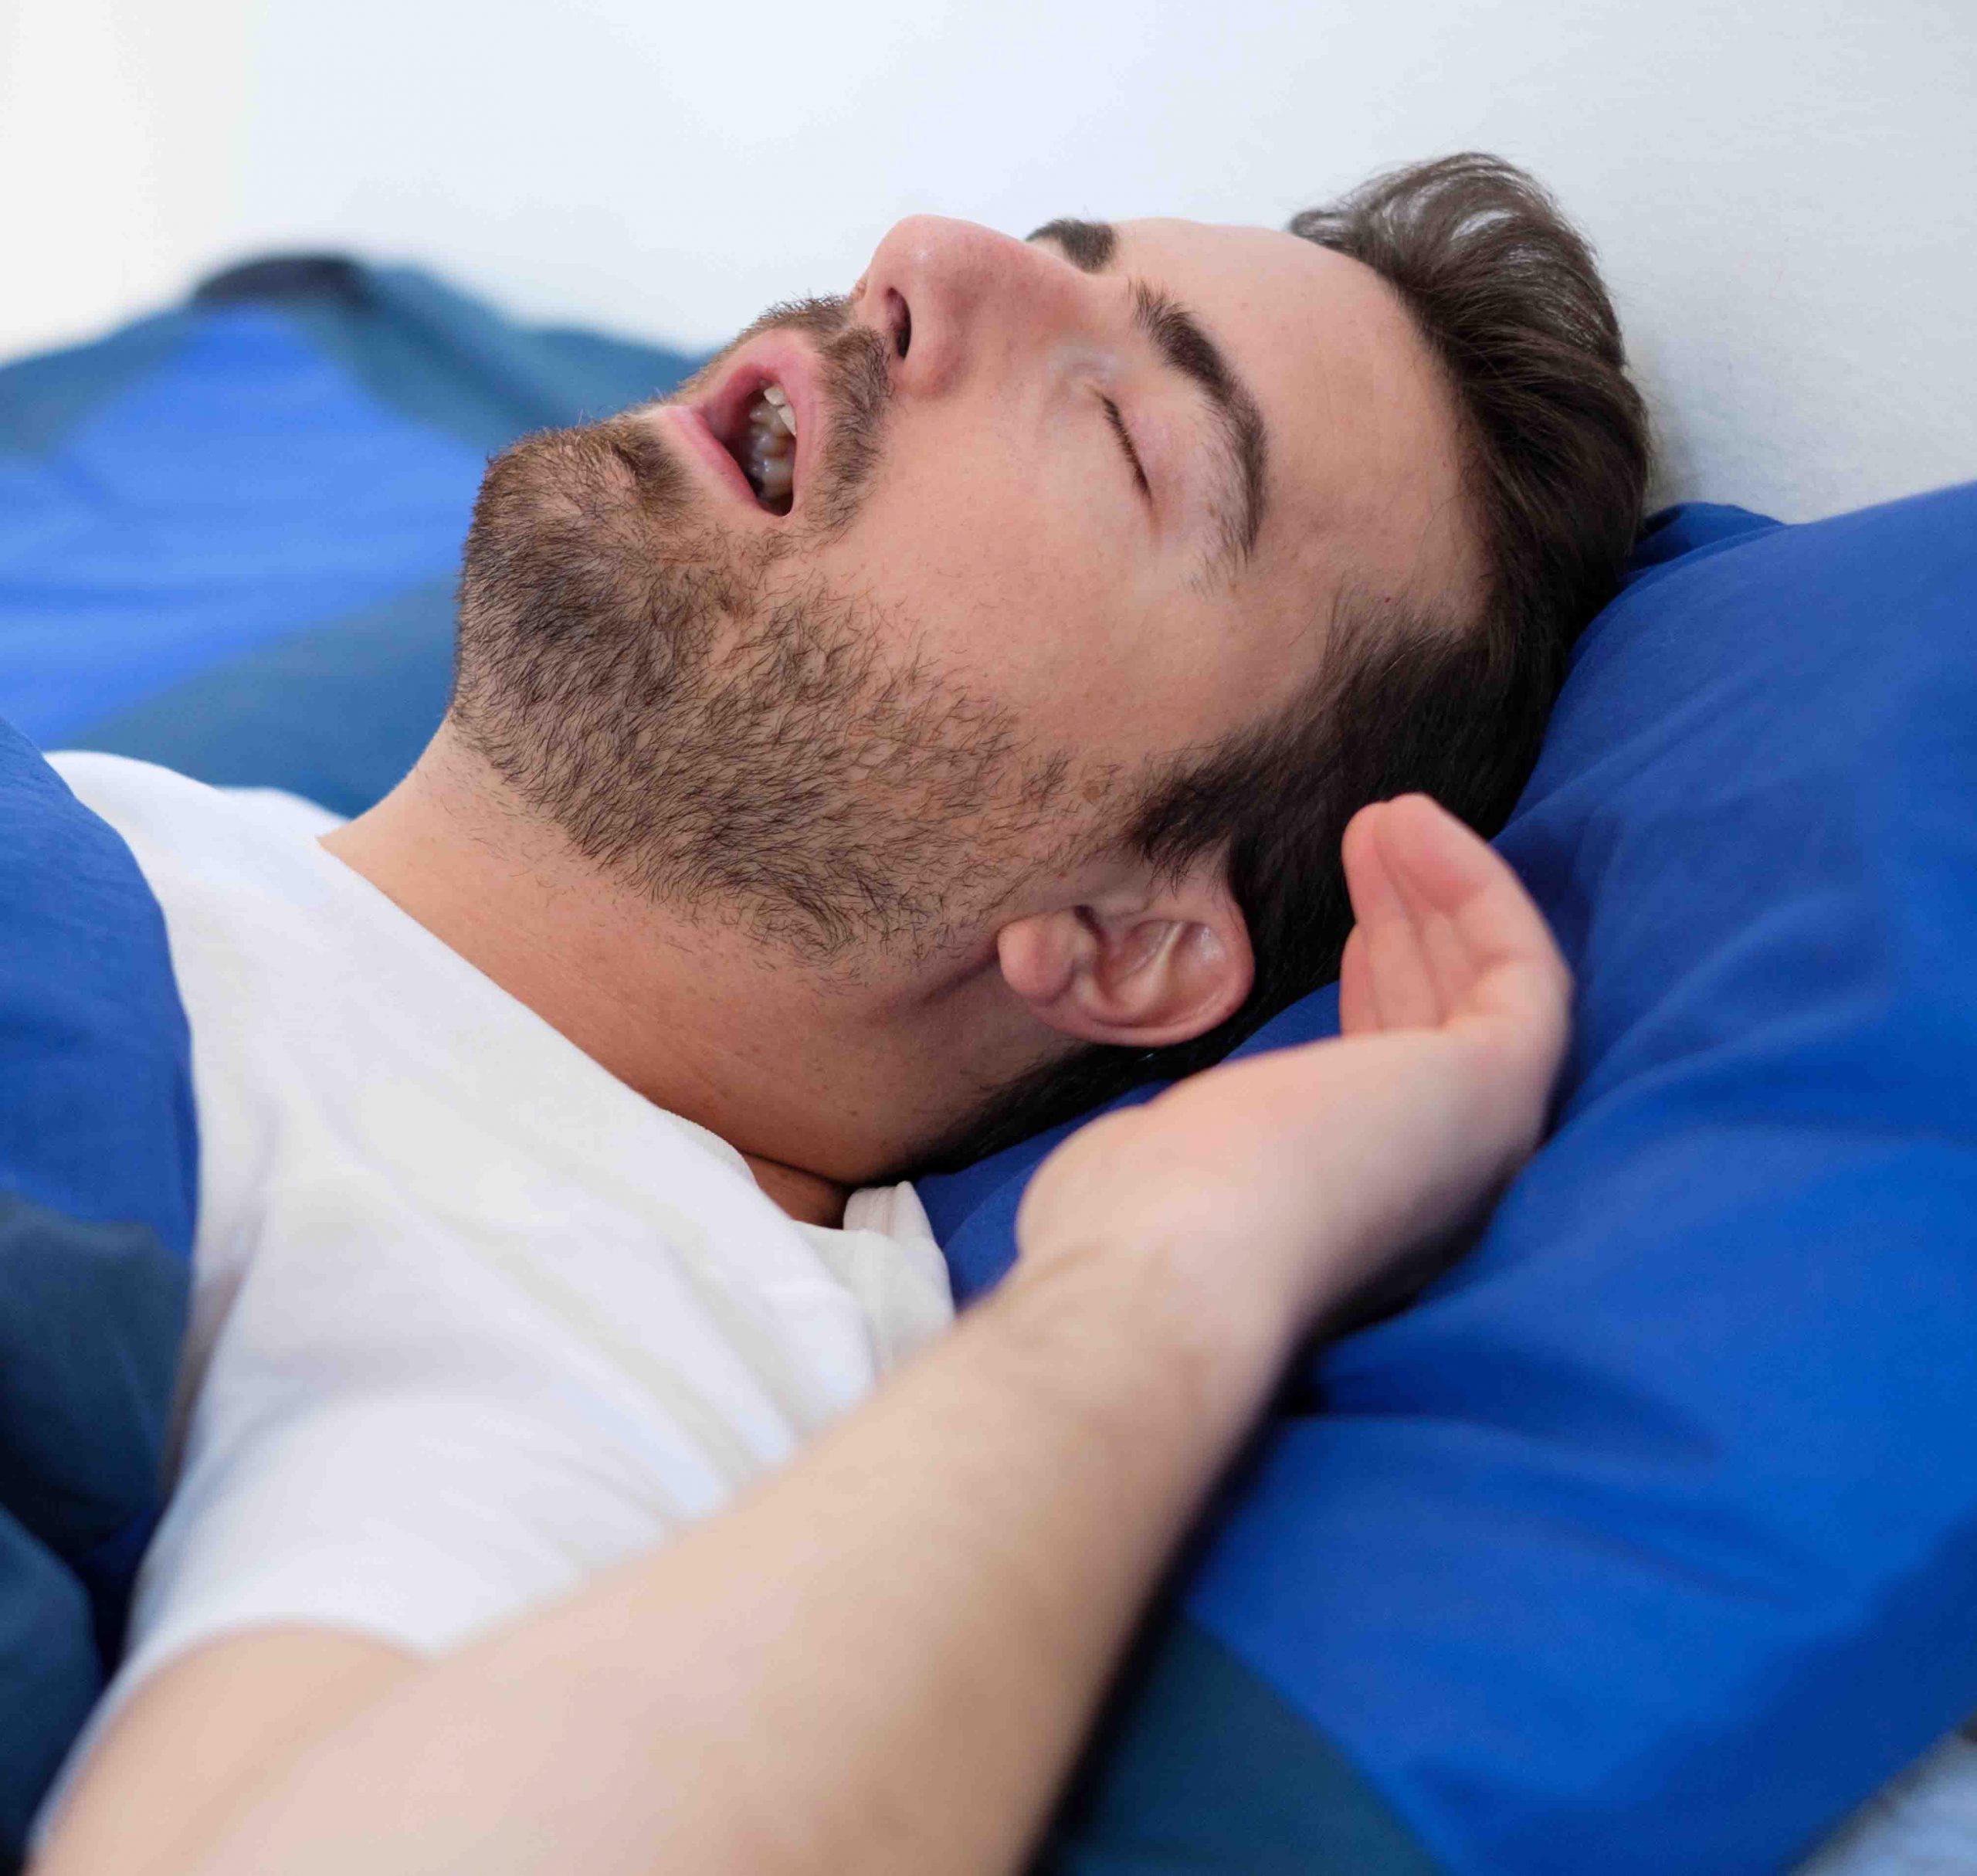 Ronquido y apnea del sueño